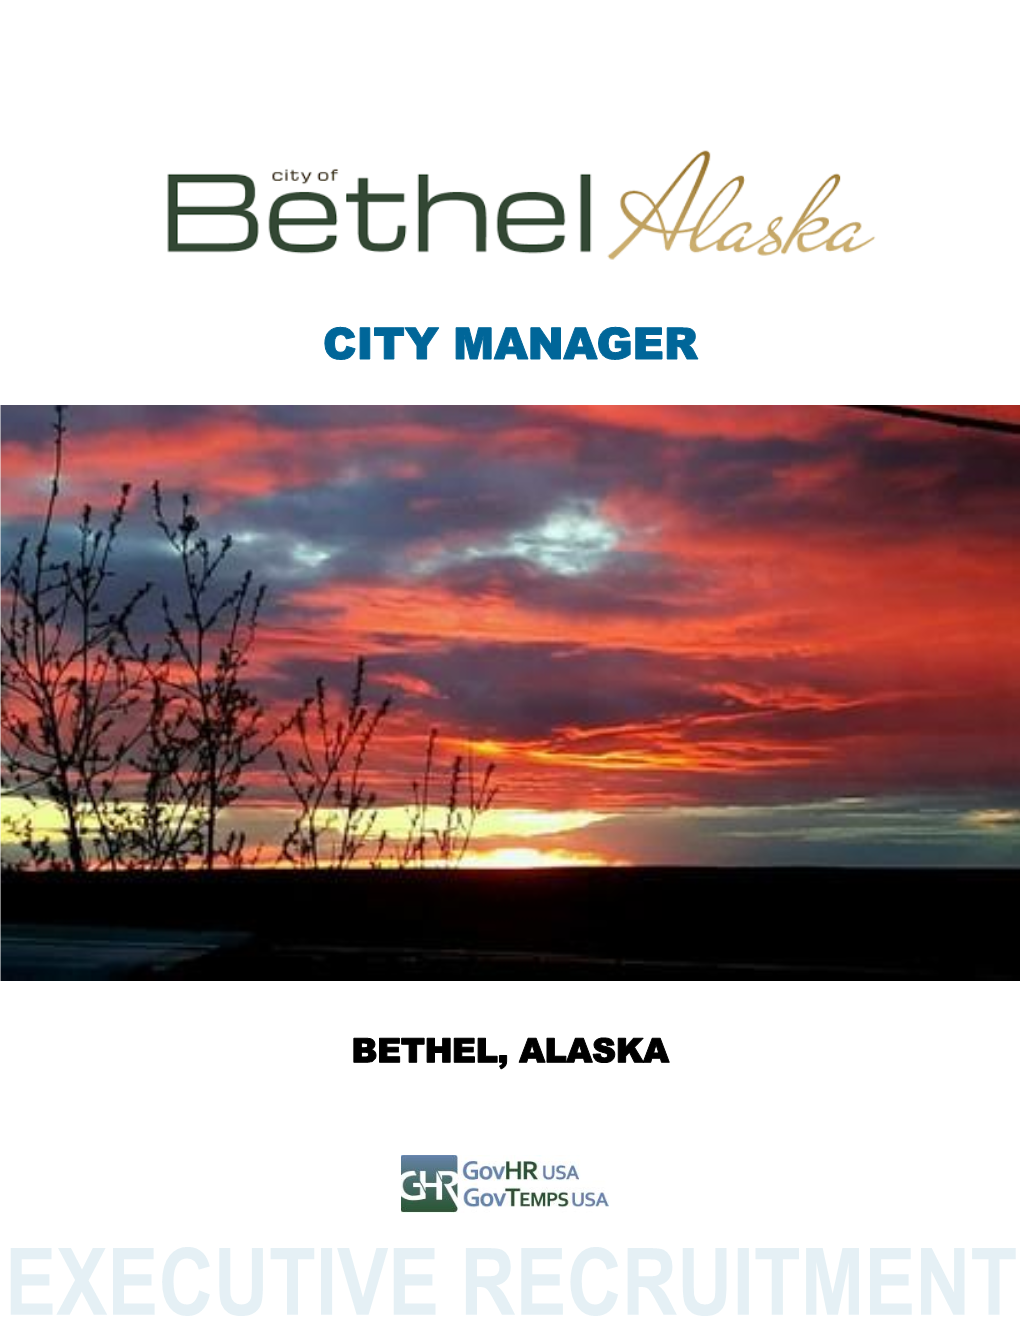 Bethel, Alaska